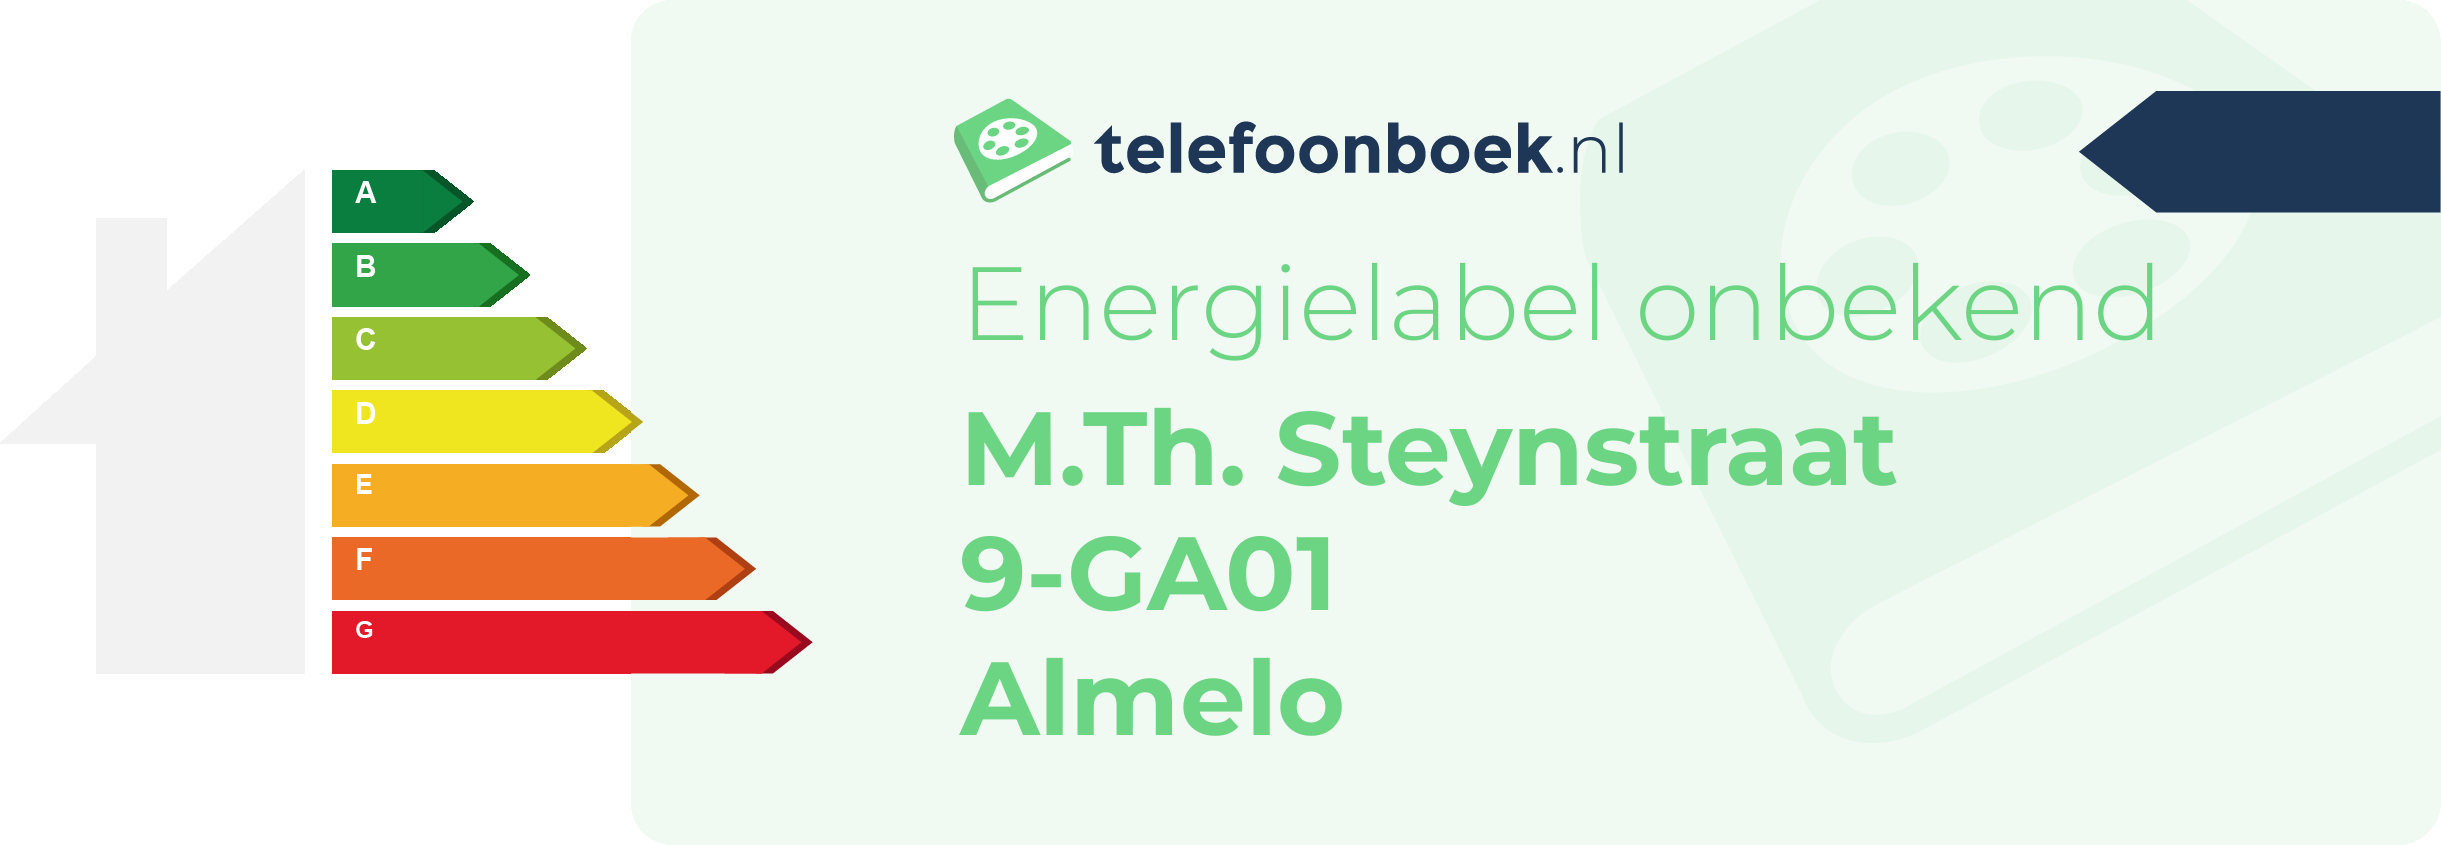 Energielabel M.Th. Steynstraat 9-GA01 Almelo